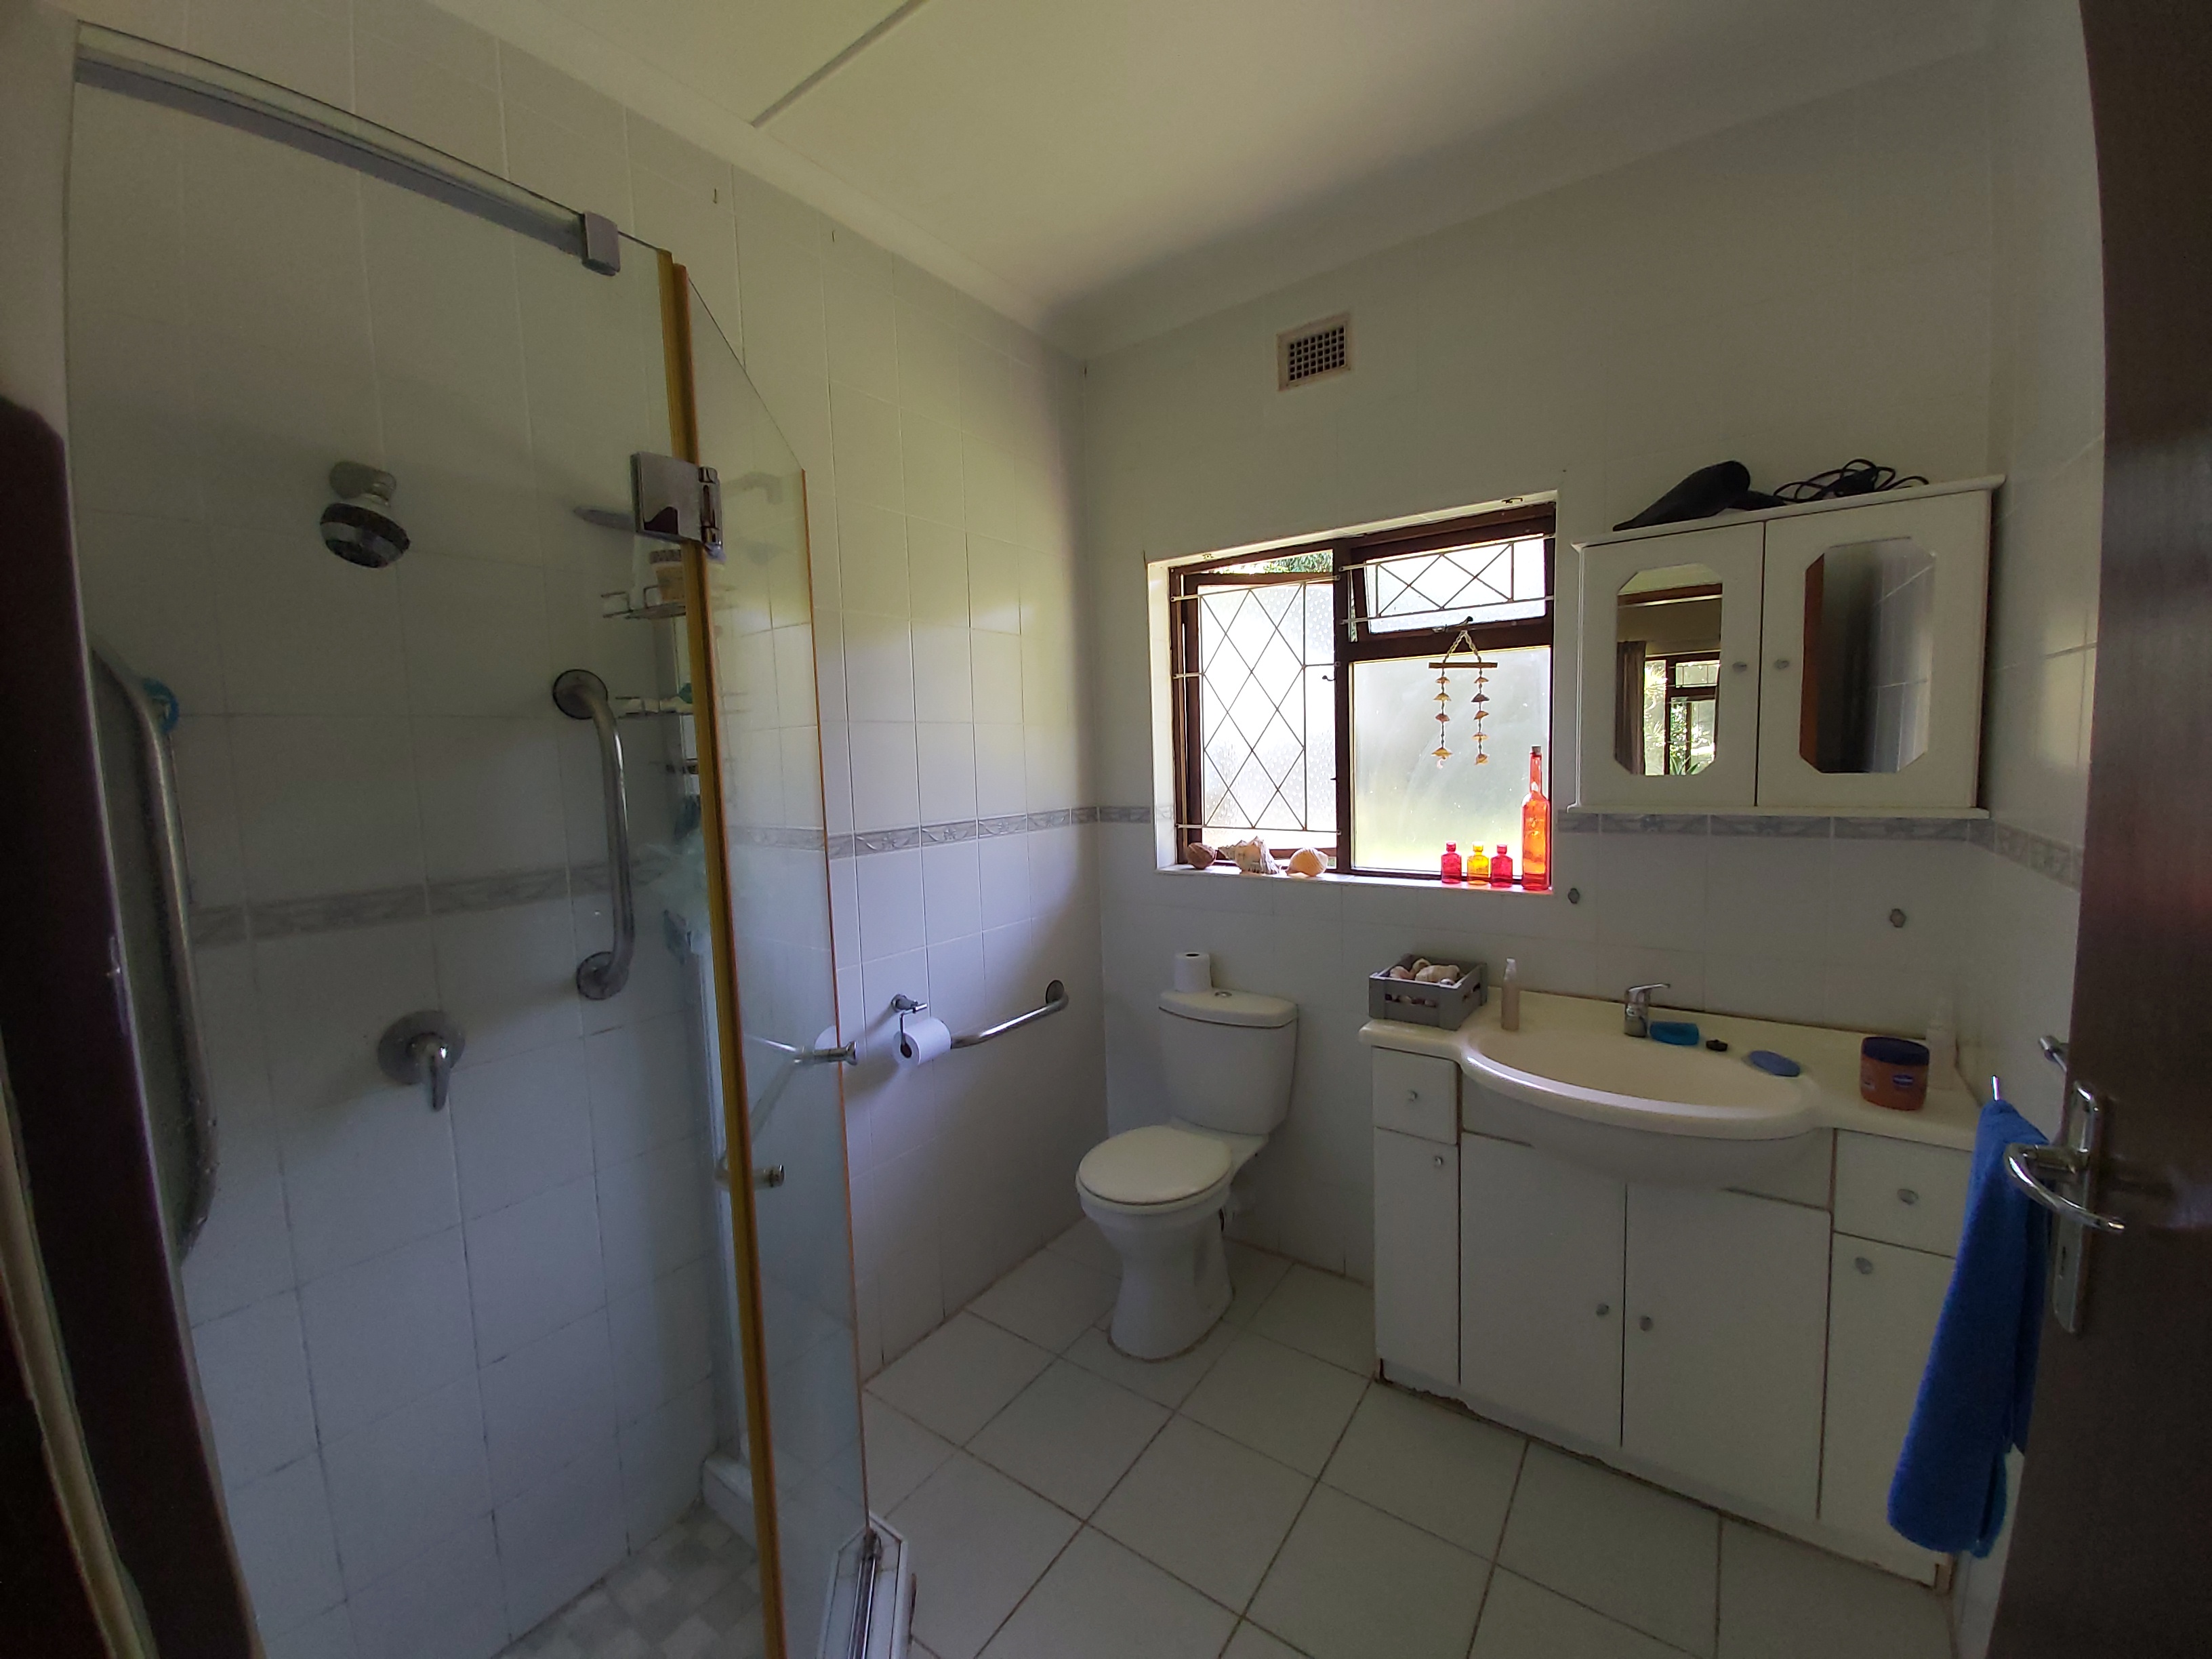 4 Bedroom Property for Sale in Blythedale KwaZulu-Natal